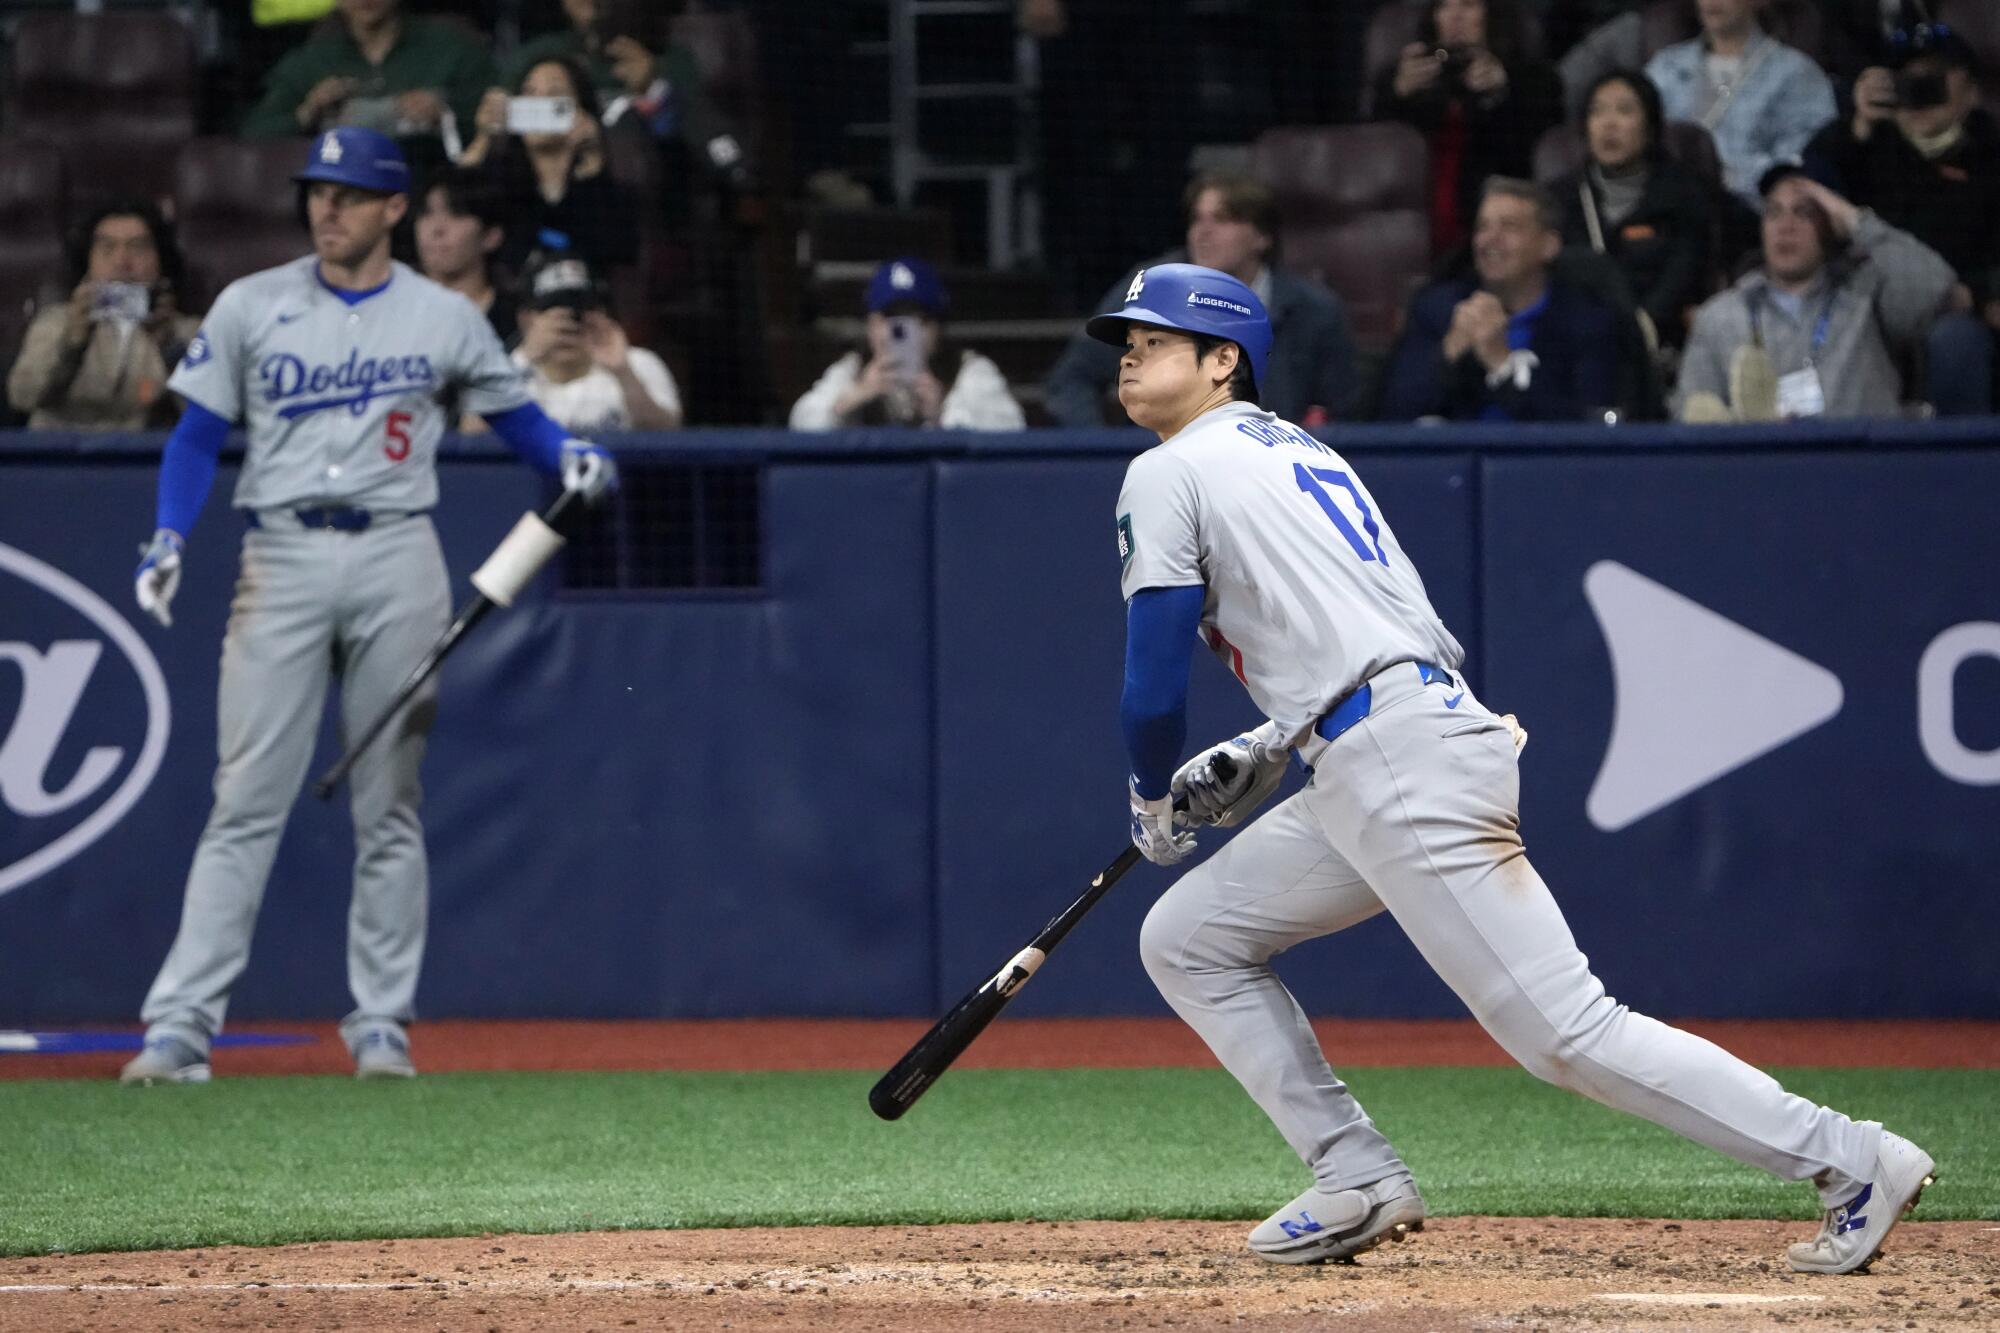 Shohei Ohtani smacks an RBI single for the Dodgers.